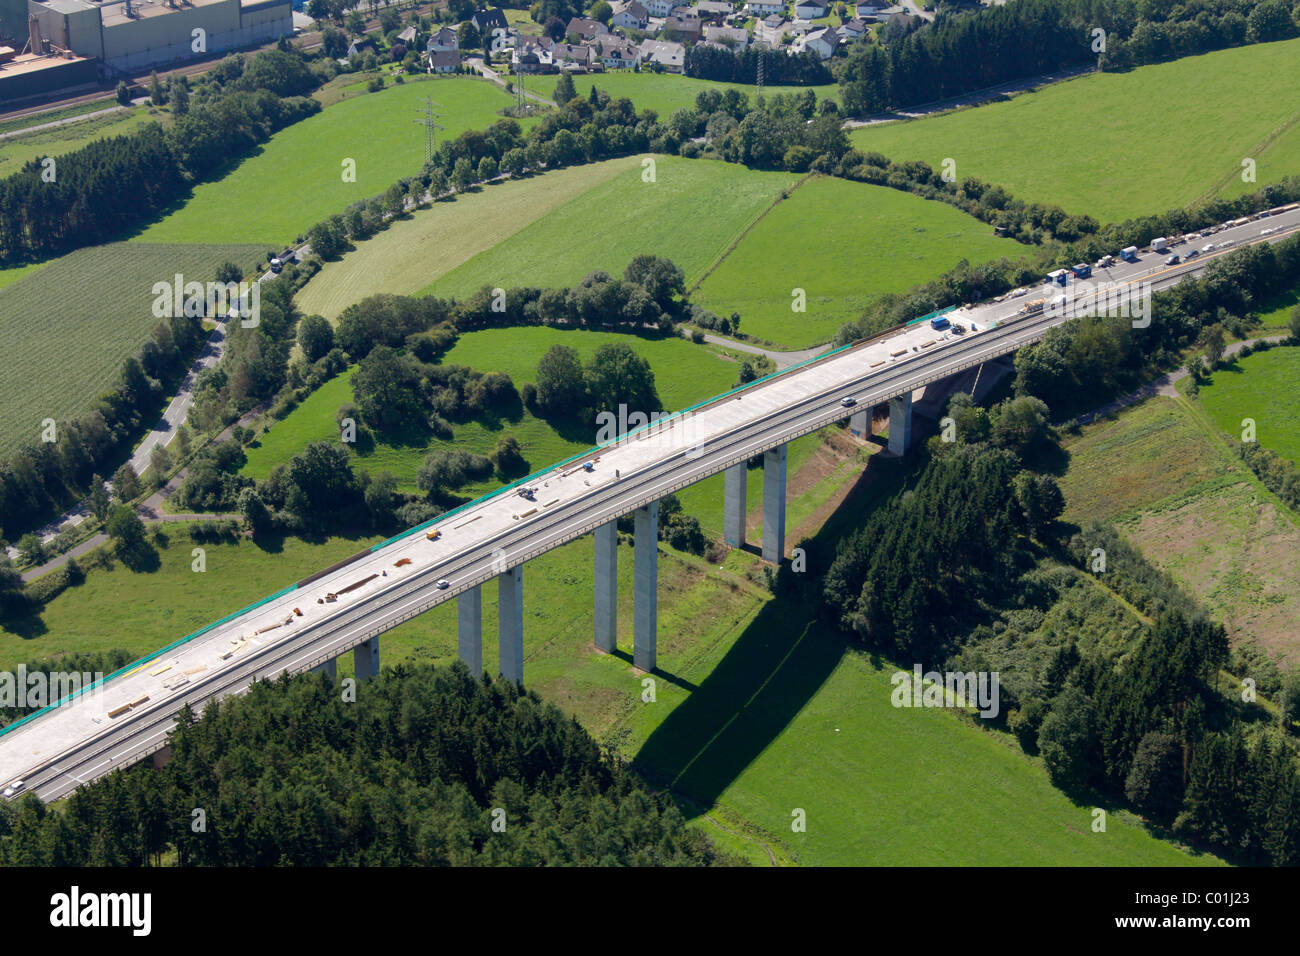 Luftbild, Sanierung von einer Autobahnbrücke, Sauerland Bereich, Tal, Wiesen, Meschede, Nordrhein-Westfalen, Deutschland, Europa Stockfoto